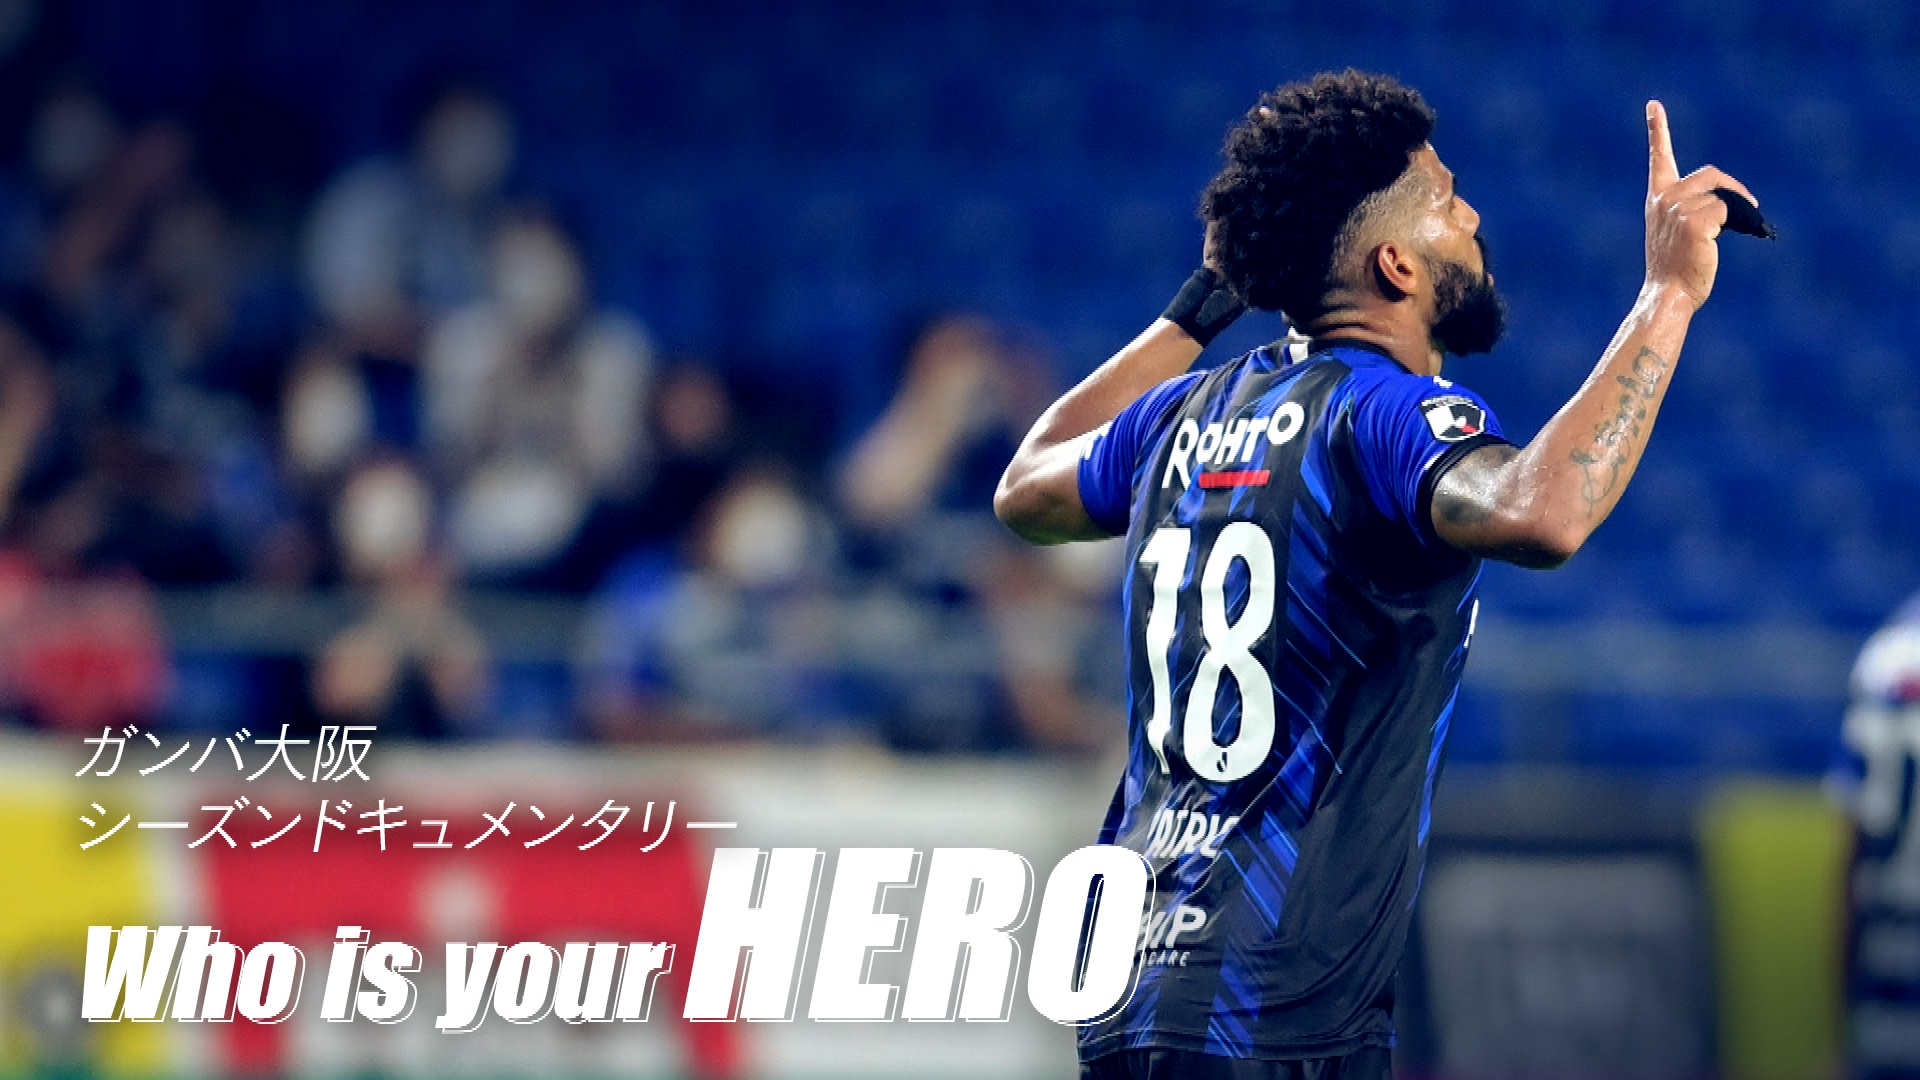 動画 Who Is Your Hero パトリック ガンバ大阪 スポーツナビ ガンバ大阪